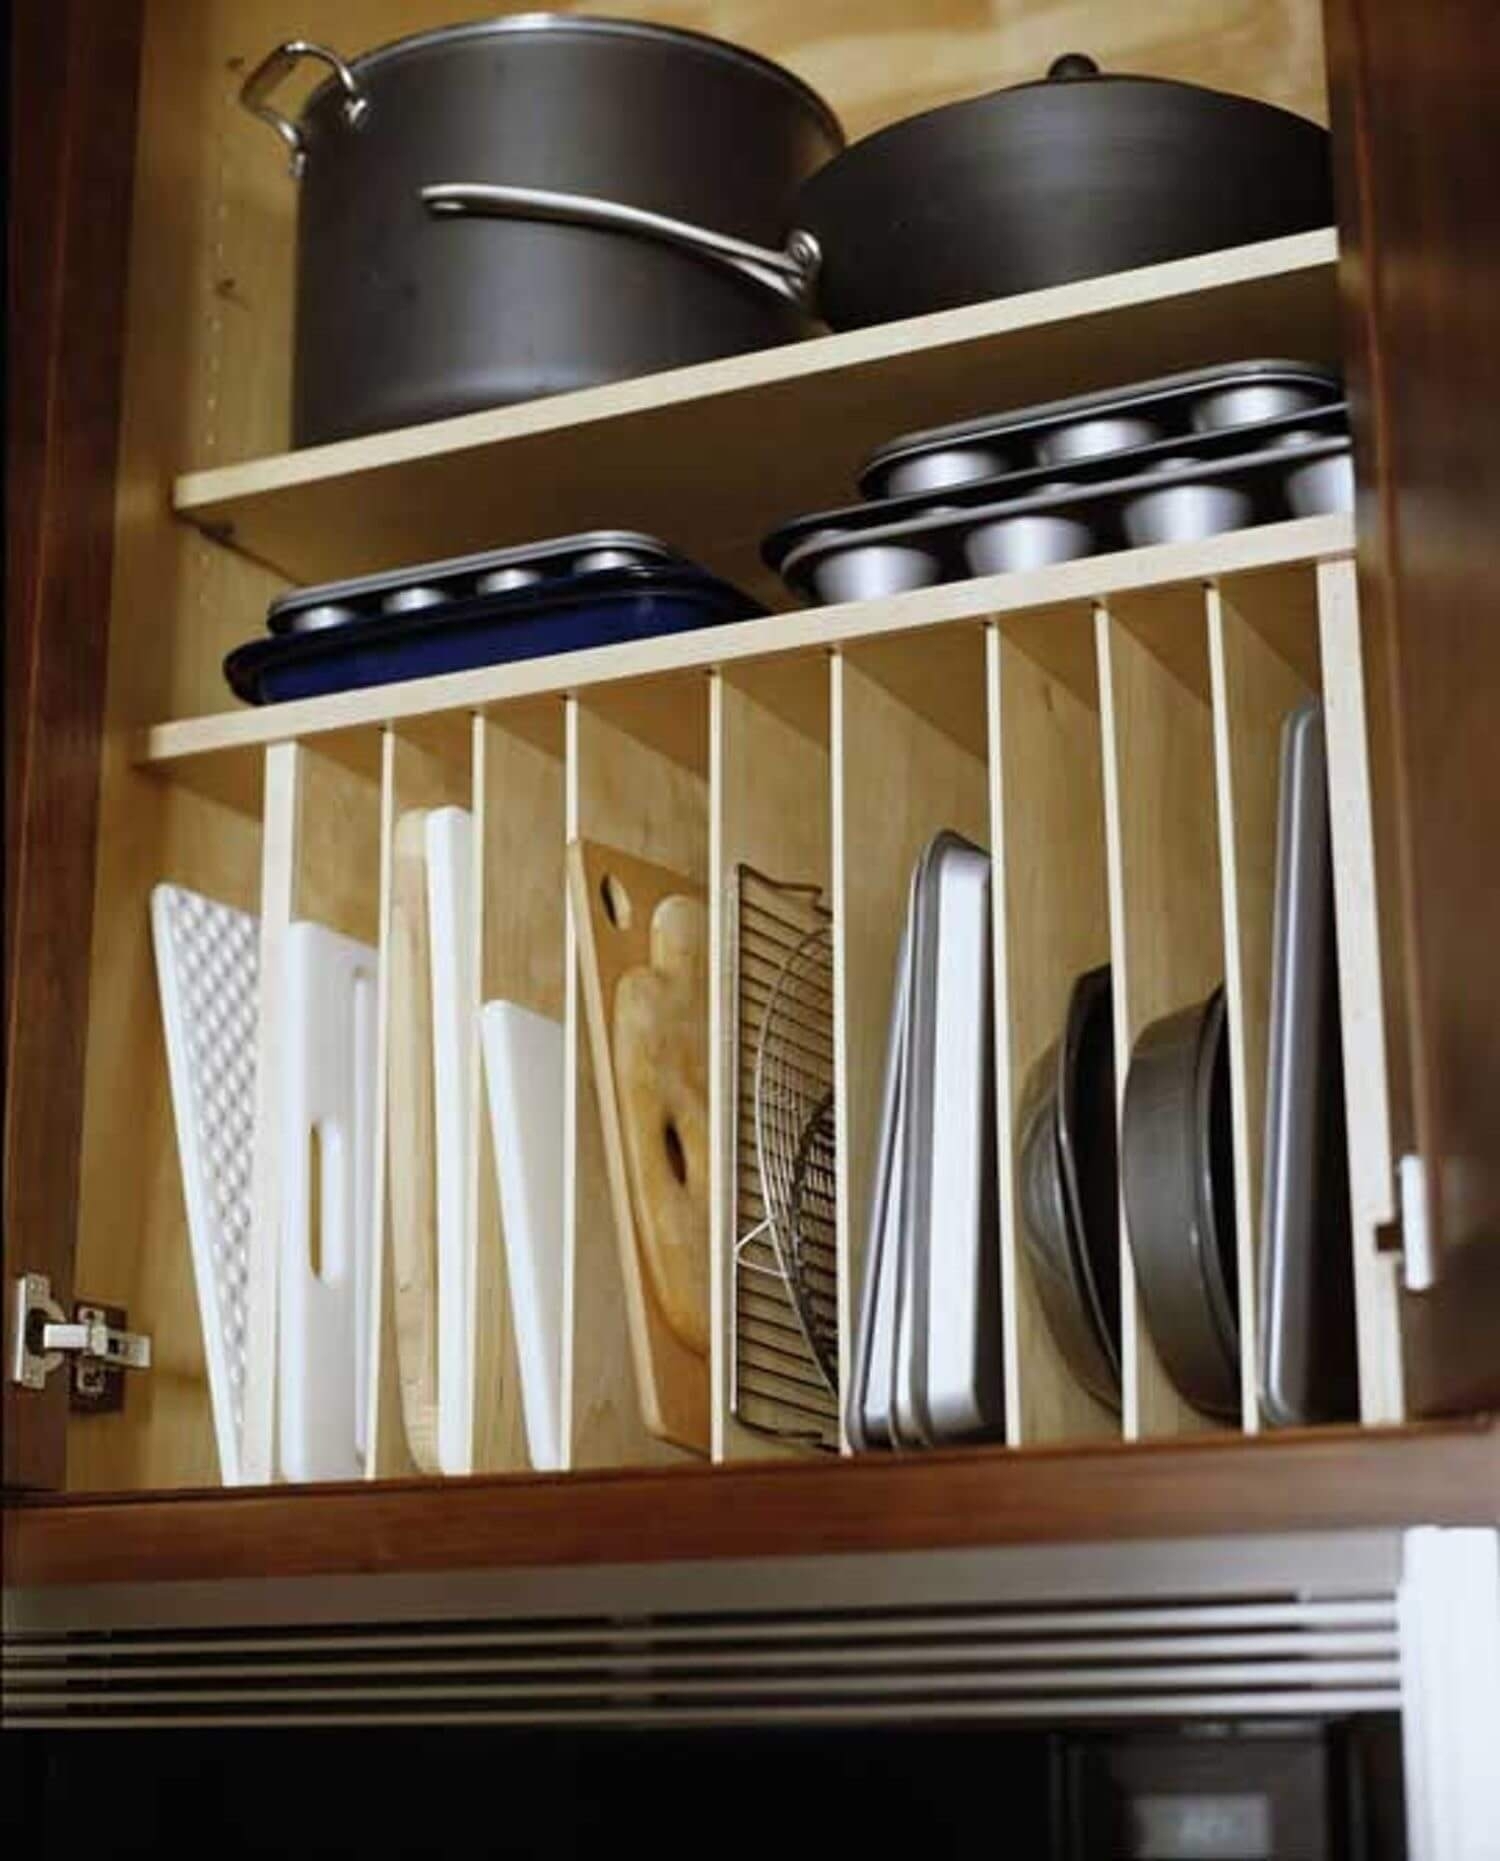 Система хранения на кухне: умные решения для компактного помещения